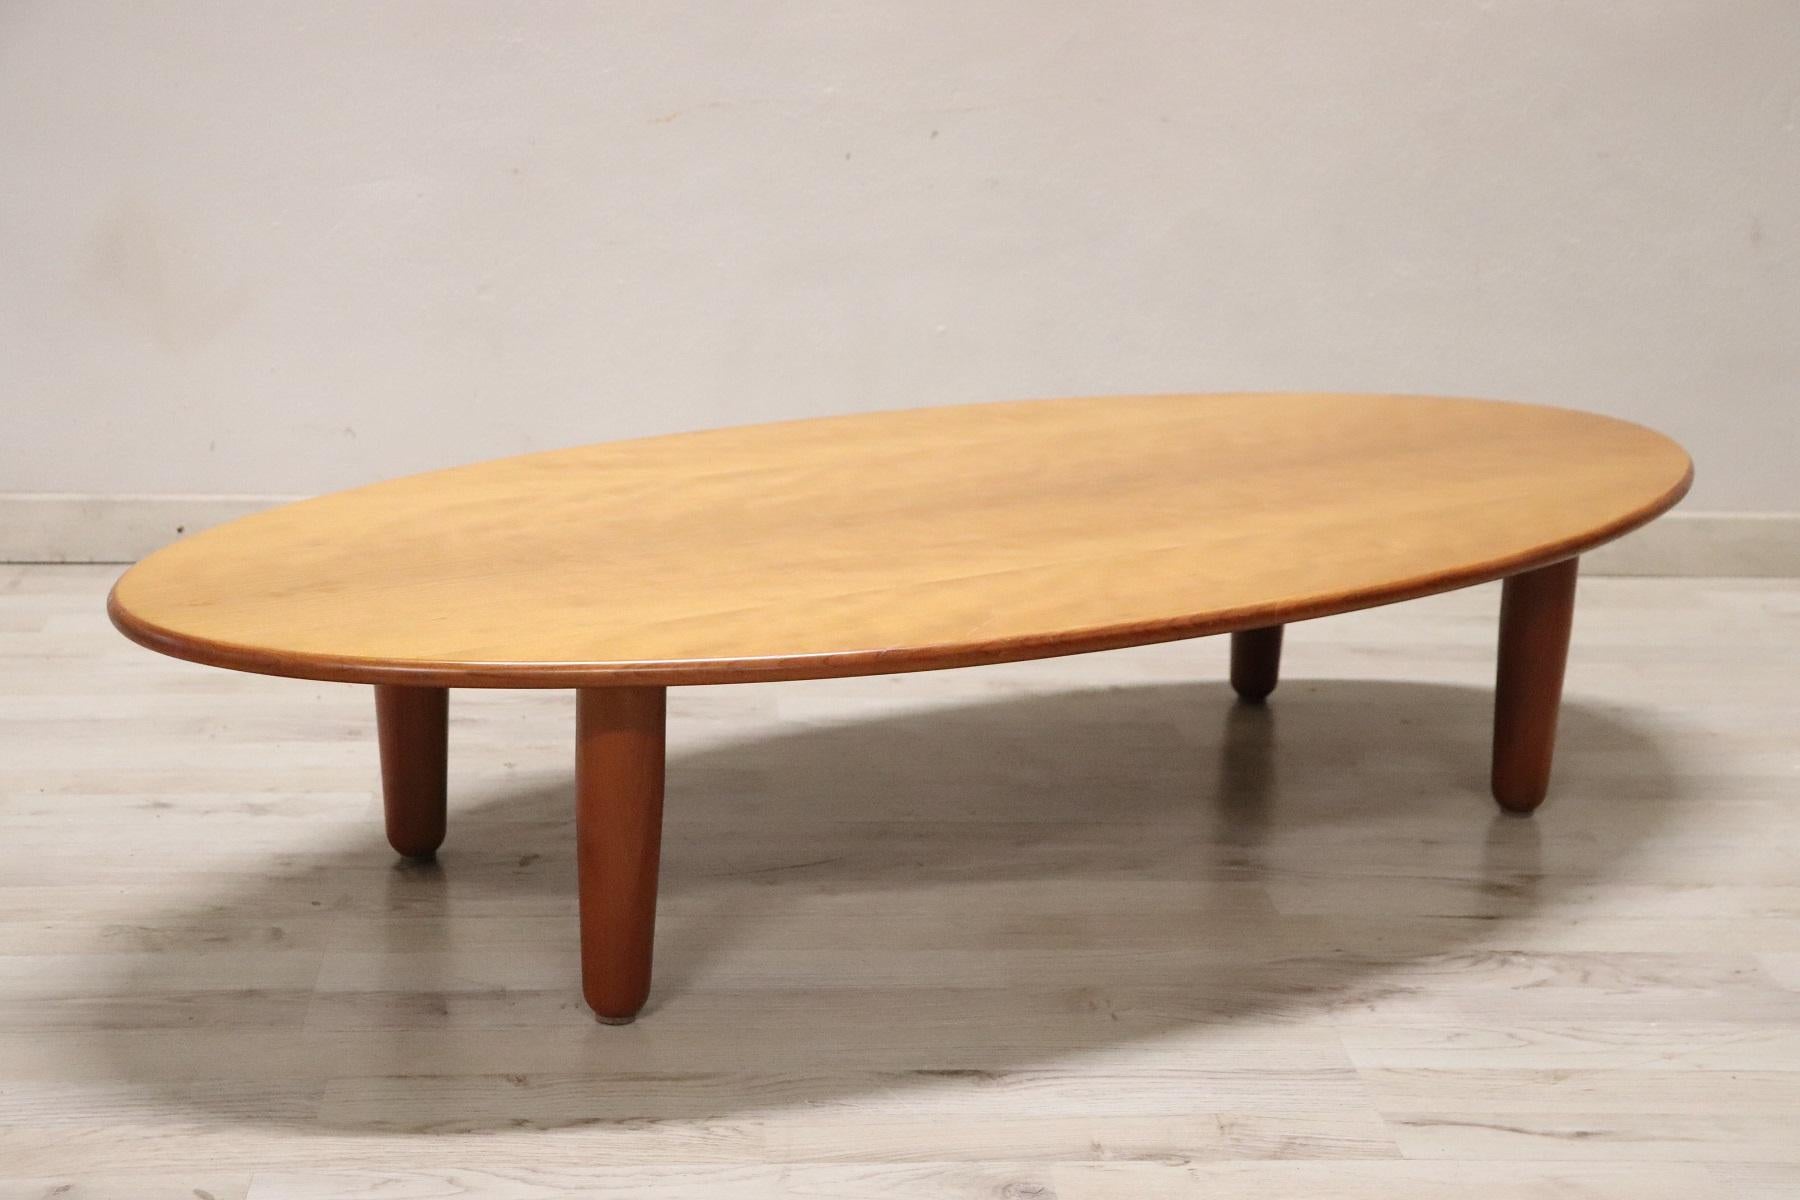 Table basse ou table de canapé de design italien rare et de qualité par Cassina 1980. La table est en bois de frêne précieux. En parfaites conditions vintage. 